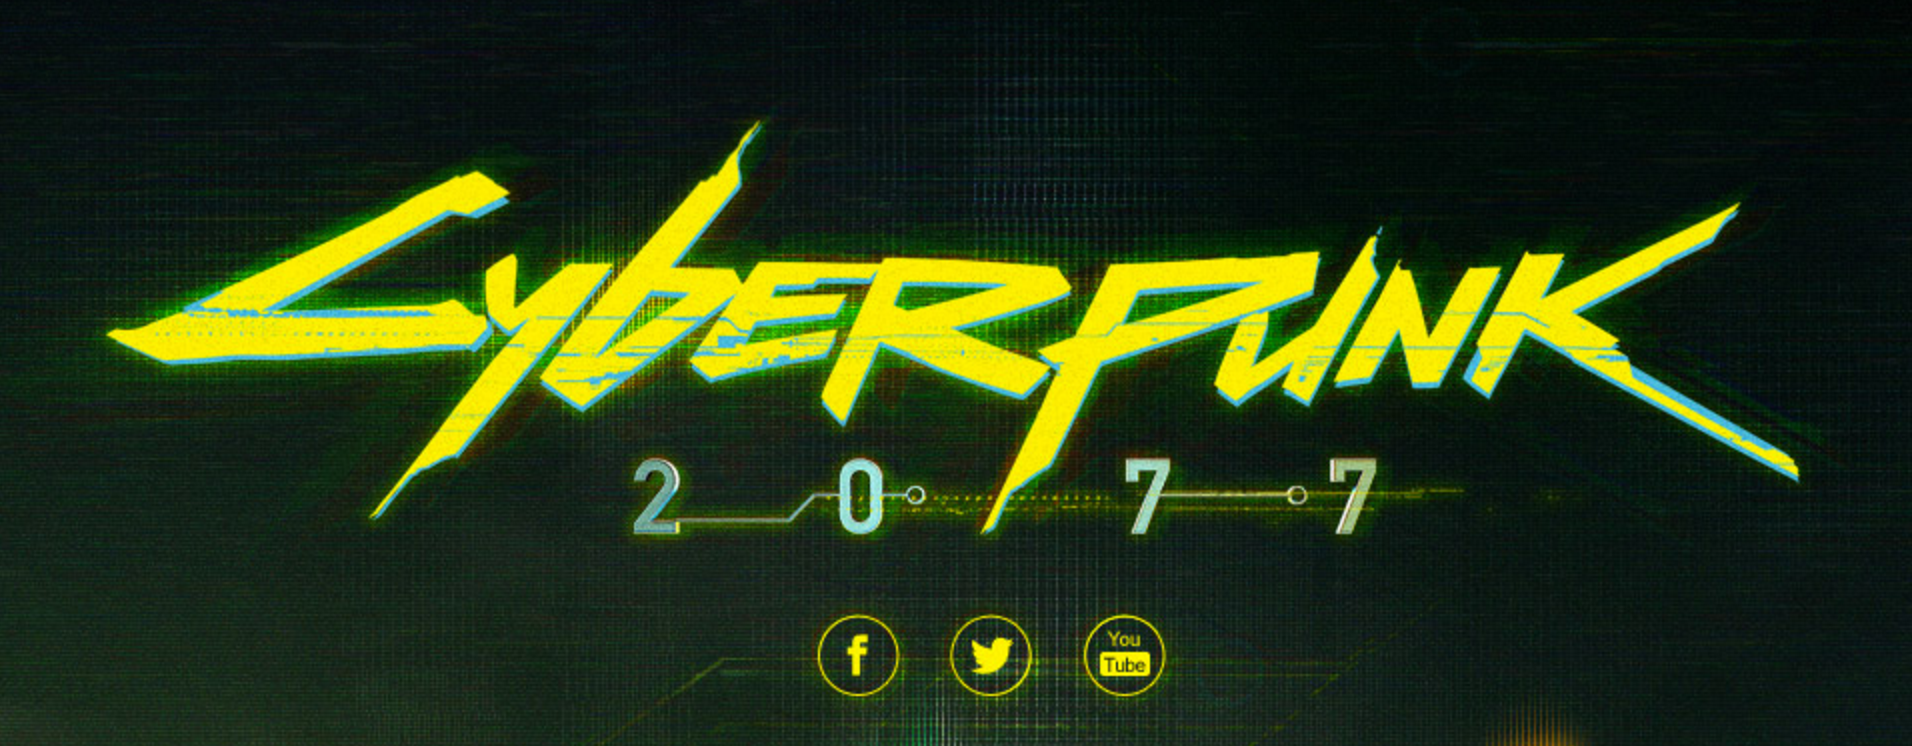 Cyberpunk 2077 game logo.